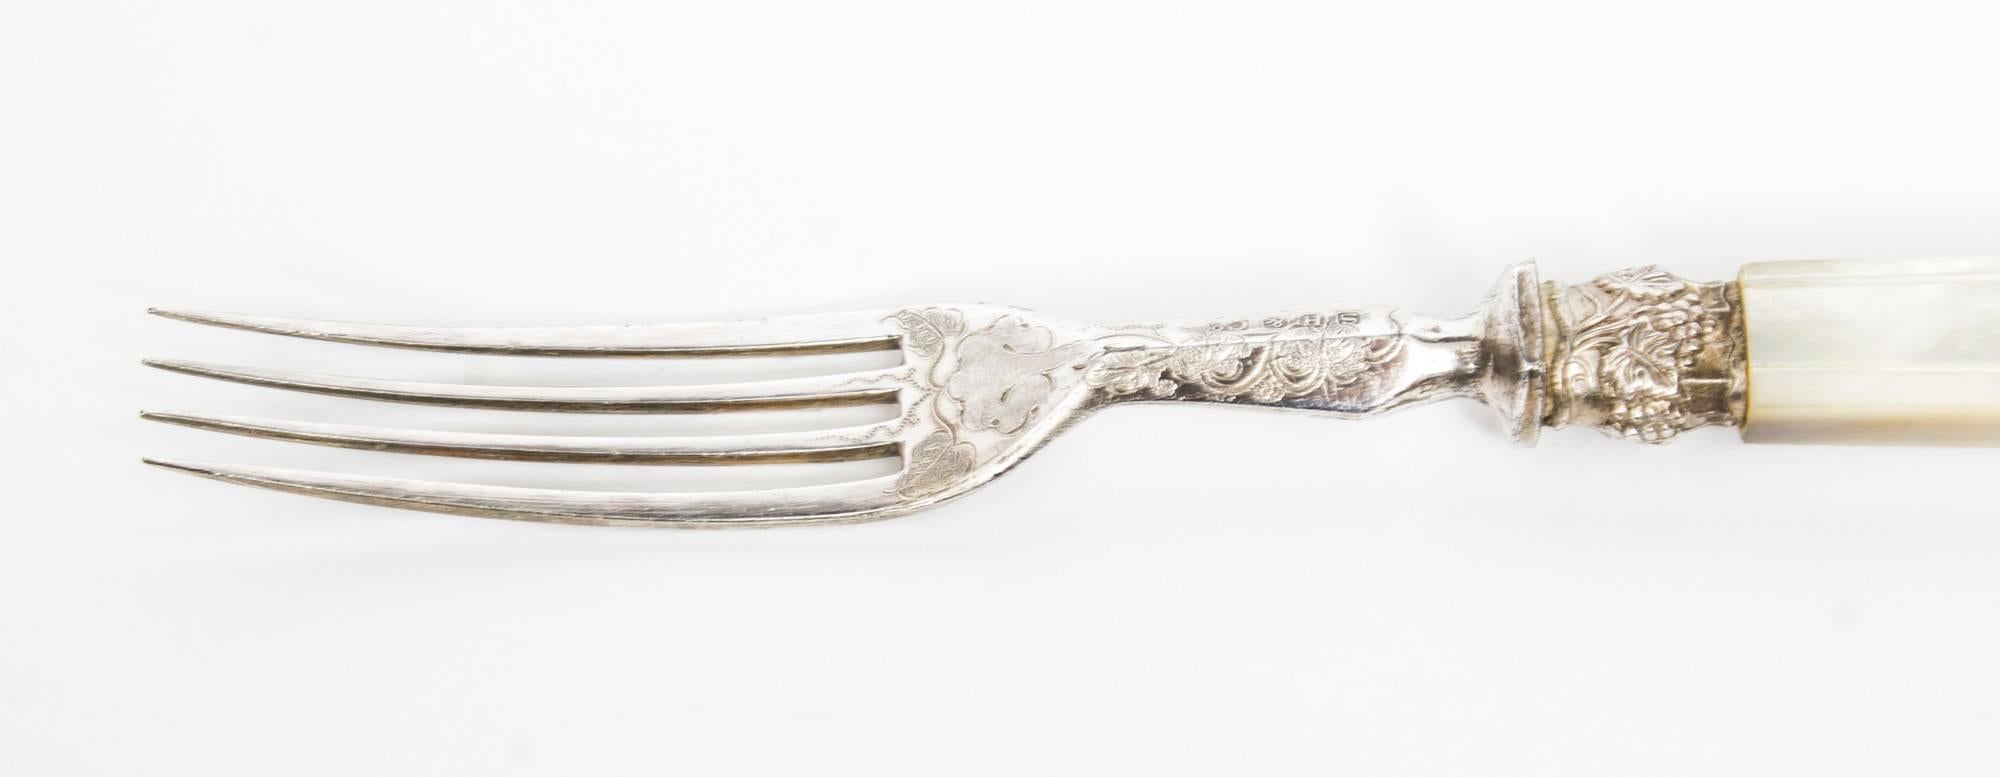 Antique Walnut Cased Set of 18 Mother-of-pearl Dessert Knives Forks 1